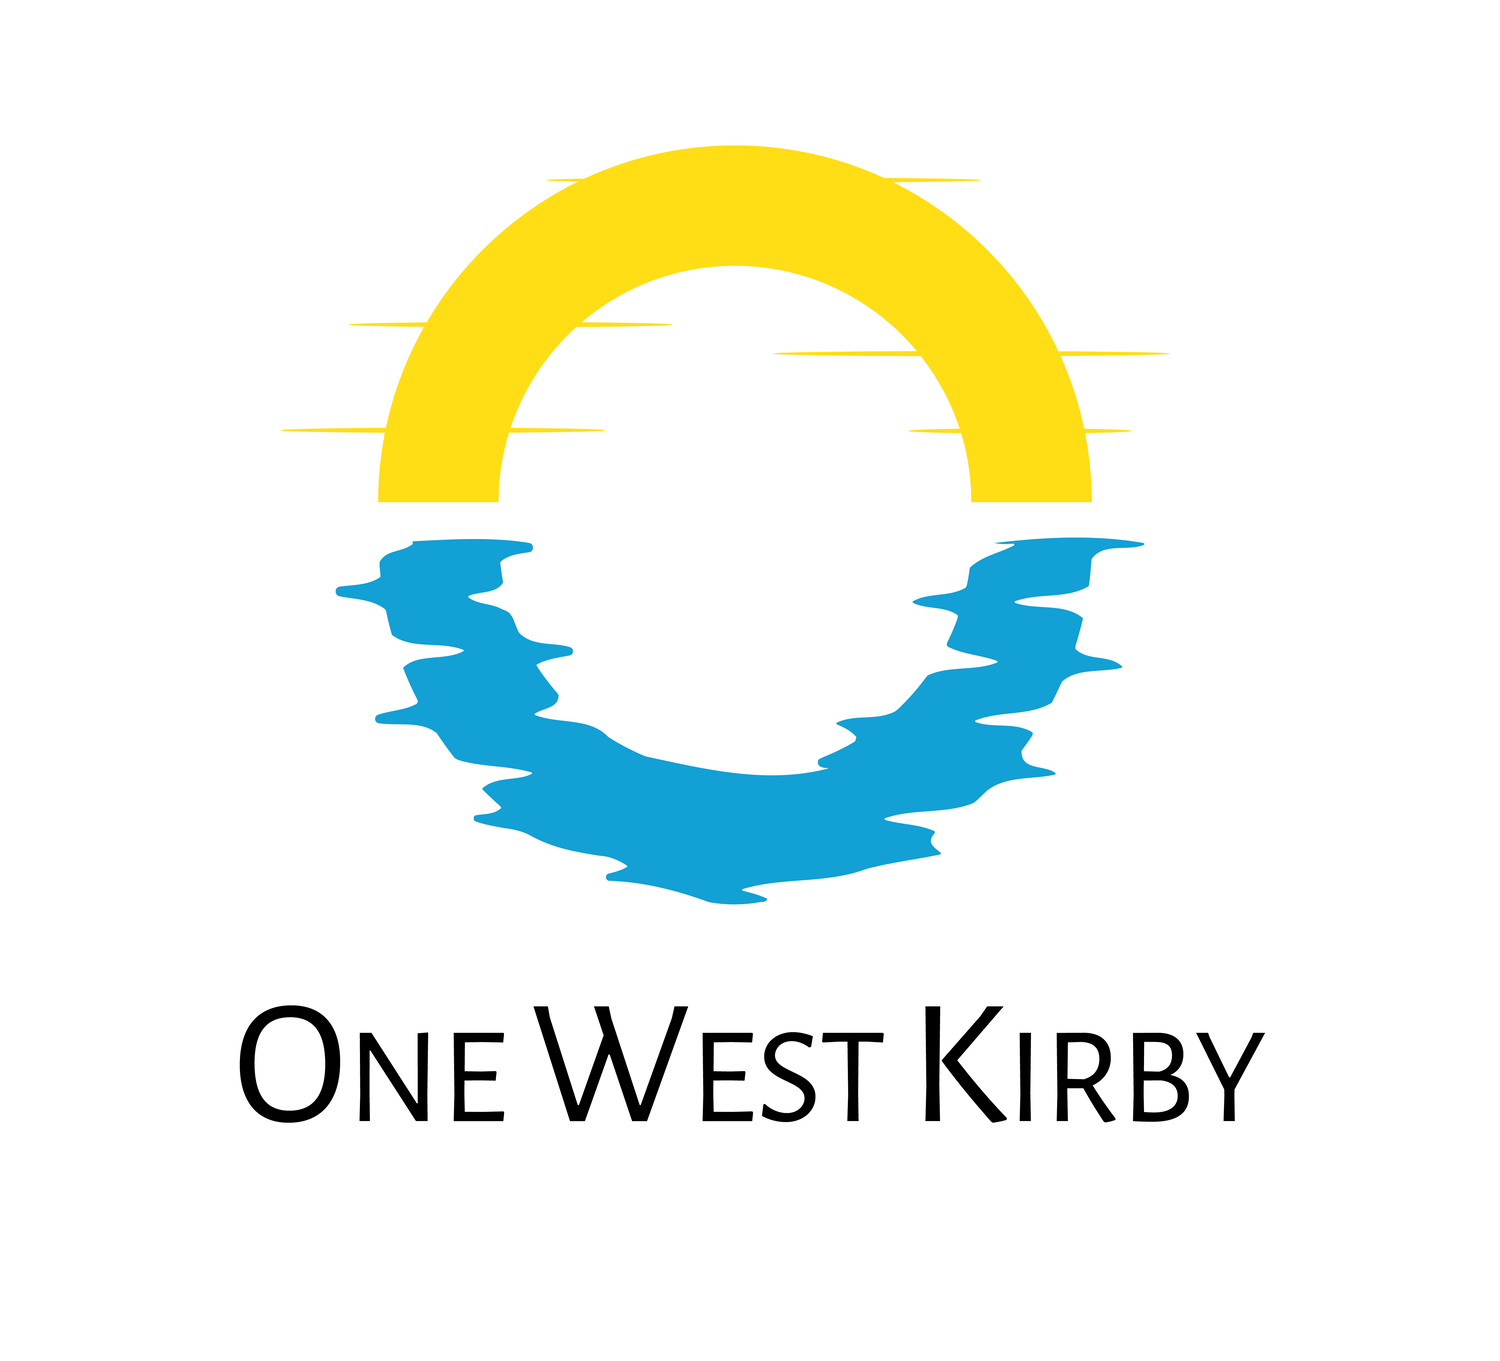 One West Kirby